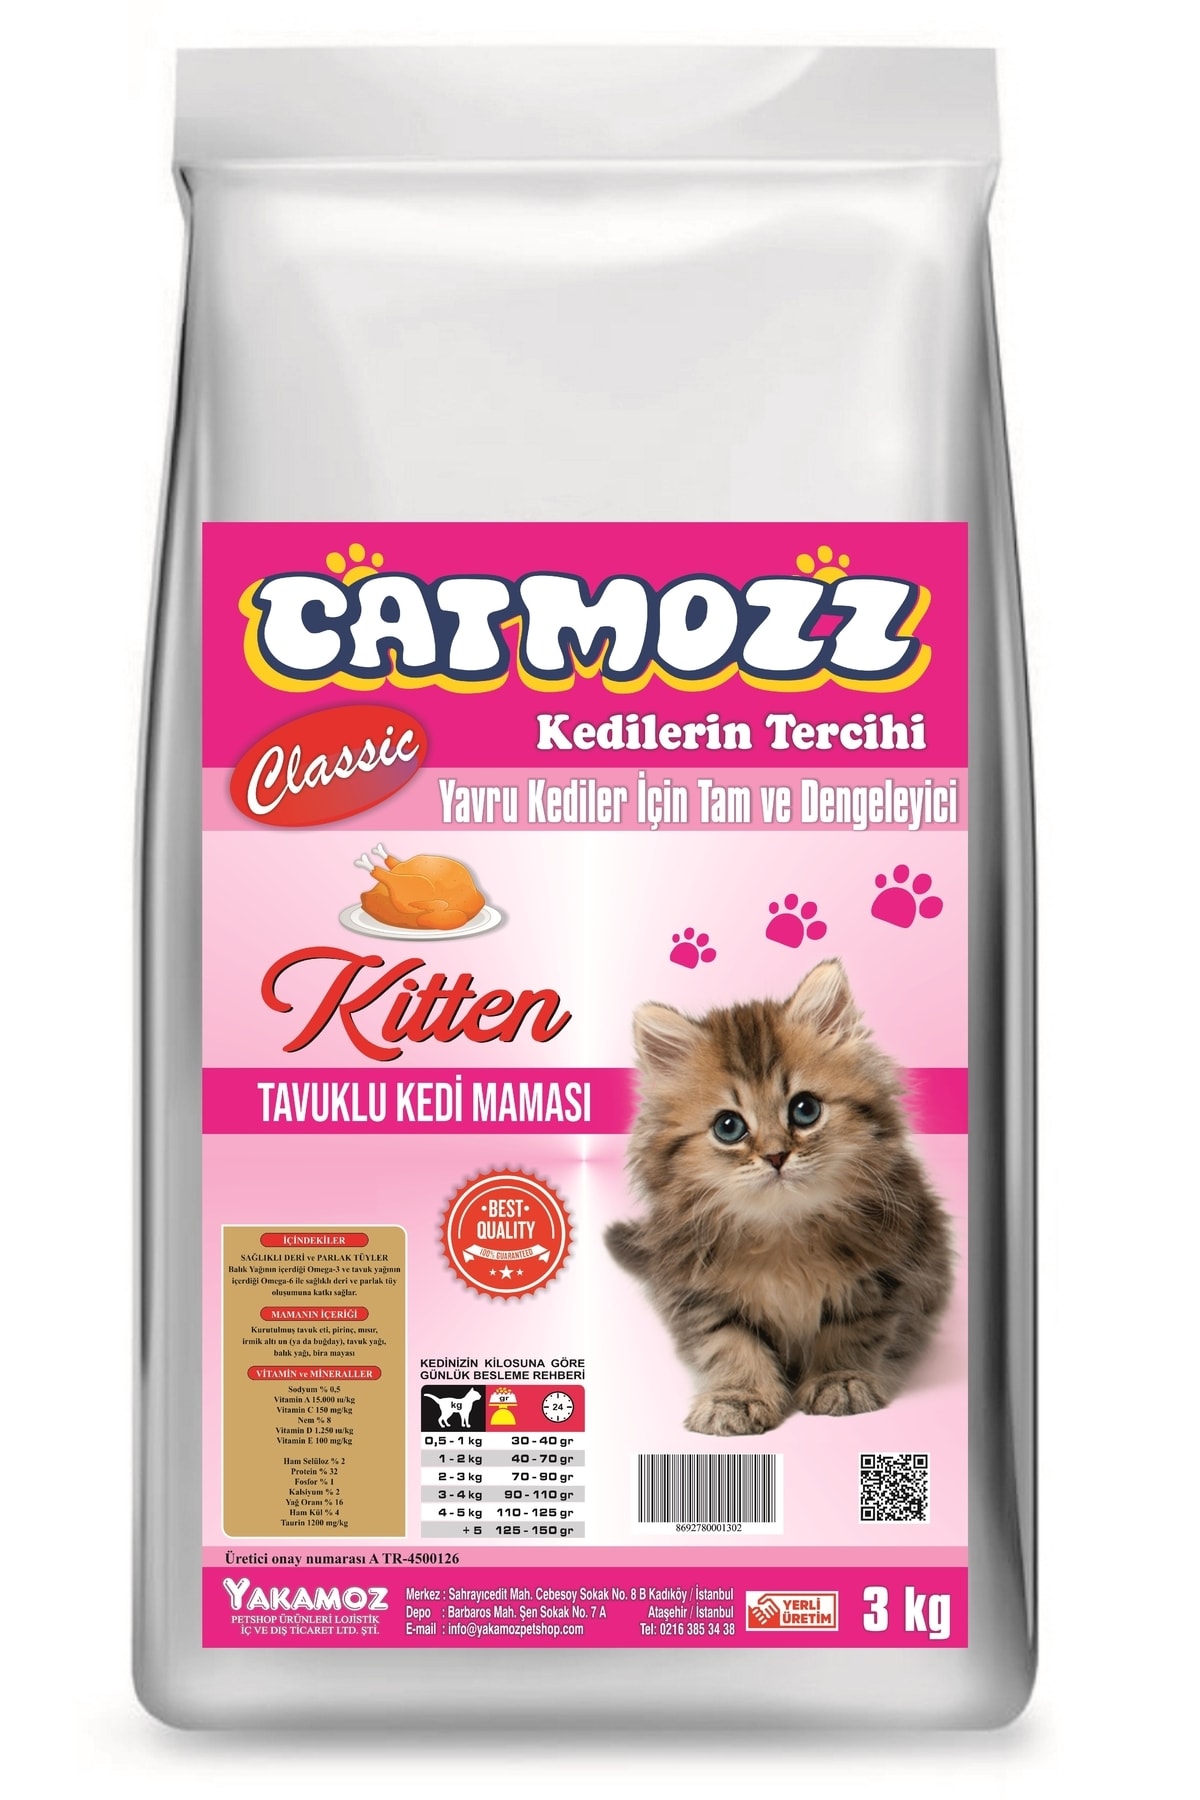 CatMozz Classic Tavuklu Kıtten Yavru Kedi Maması 3 Kg